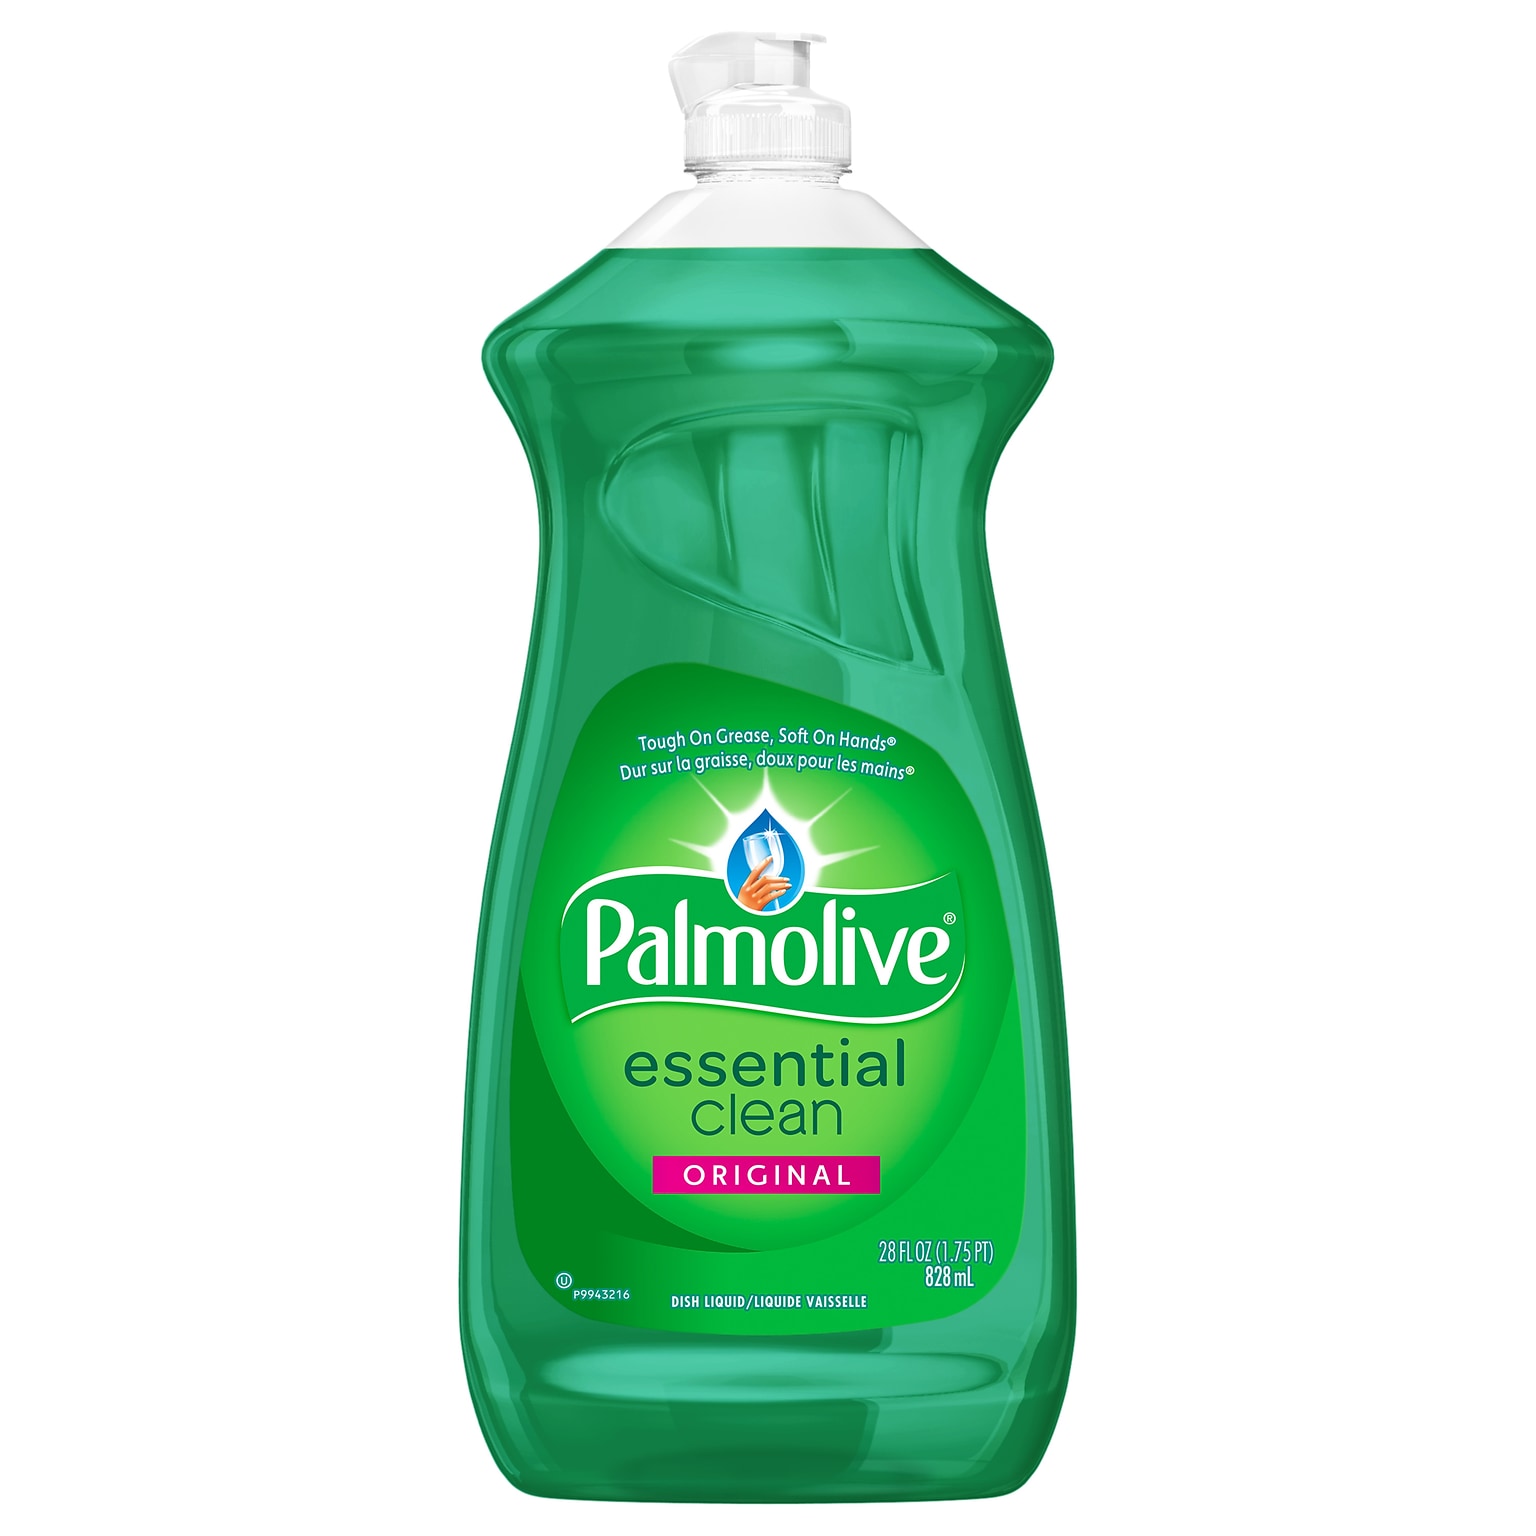 Palmolive Essential Clean Liquid Dish Soap, Original Scent, 28 oz. (US06022A)